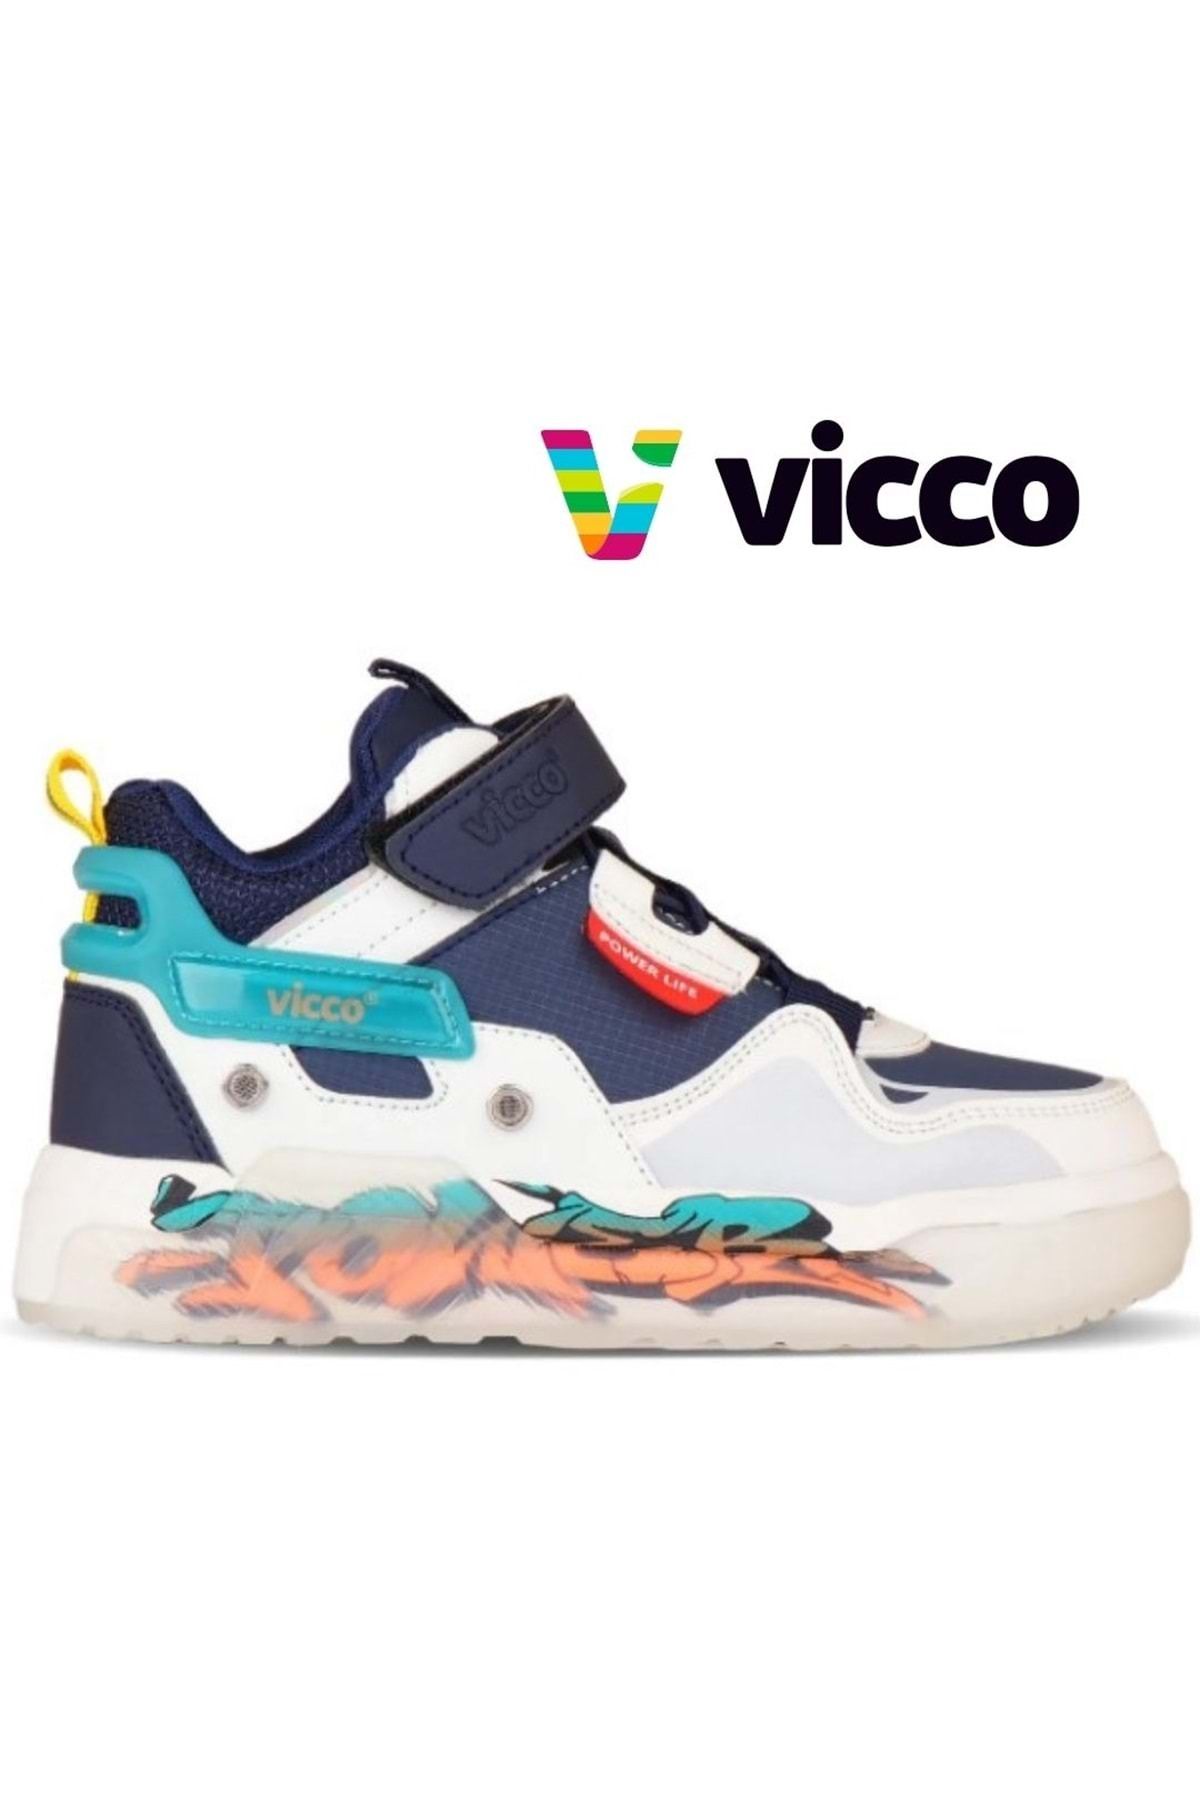 Vicco Martis Jordan Sneaker Force Ortopedik Çocuk Spor Ayakkabı Lacivert